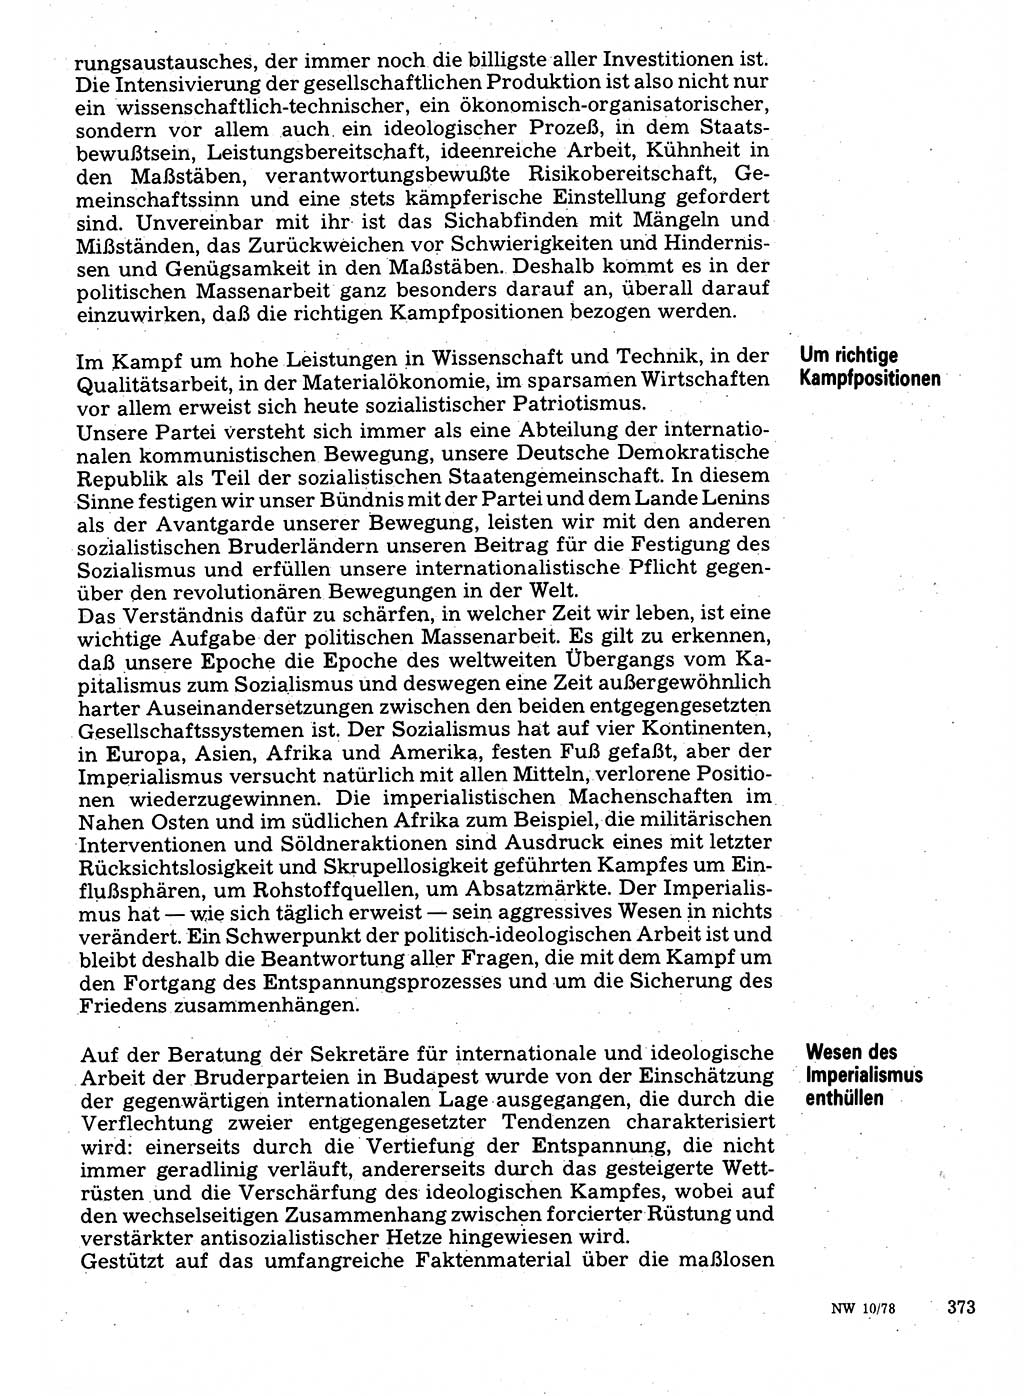 Neuer Weg (NW), Organ des Zentralkomitees (ZK) der SED (Sozialistische Einheitspartei Deutschlands) für Fragen des Parteilebens, 33. Jahrgang [Deutsche Demokratische Republik (DDR)] 1978, Seite 373 (NW ZK SED DDR 1978, S. 373)